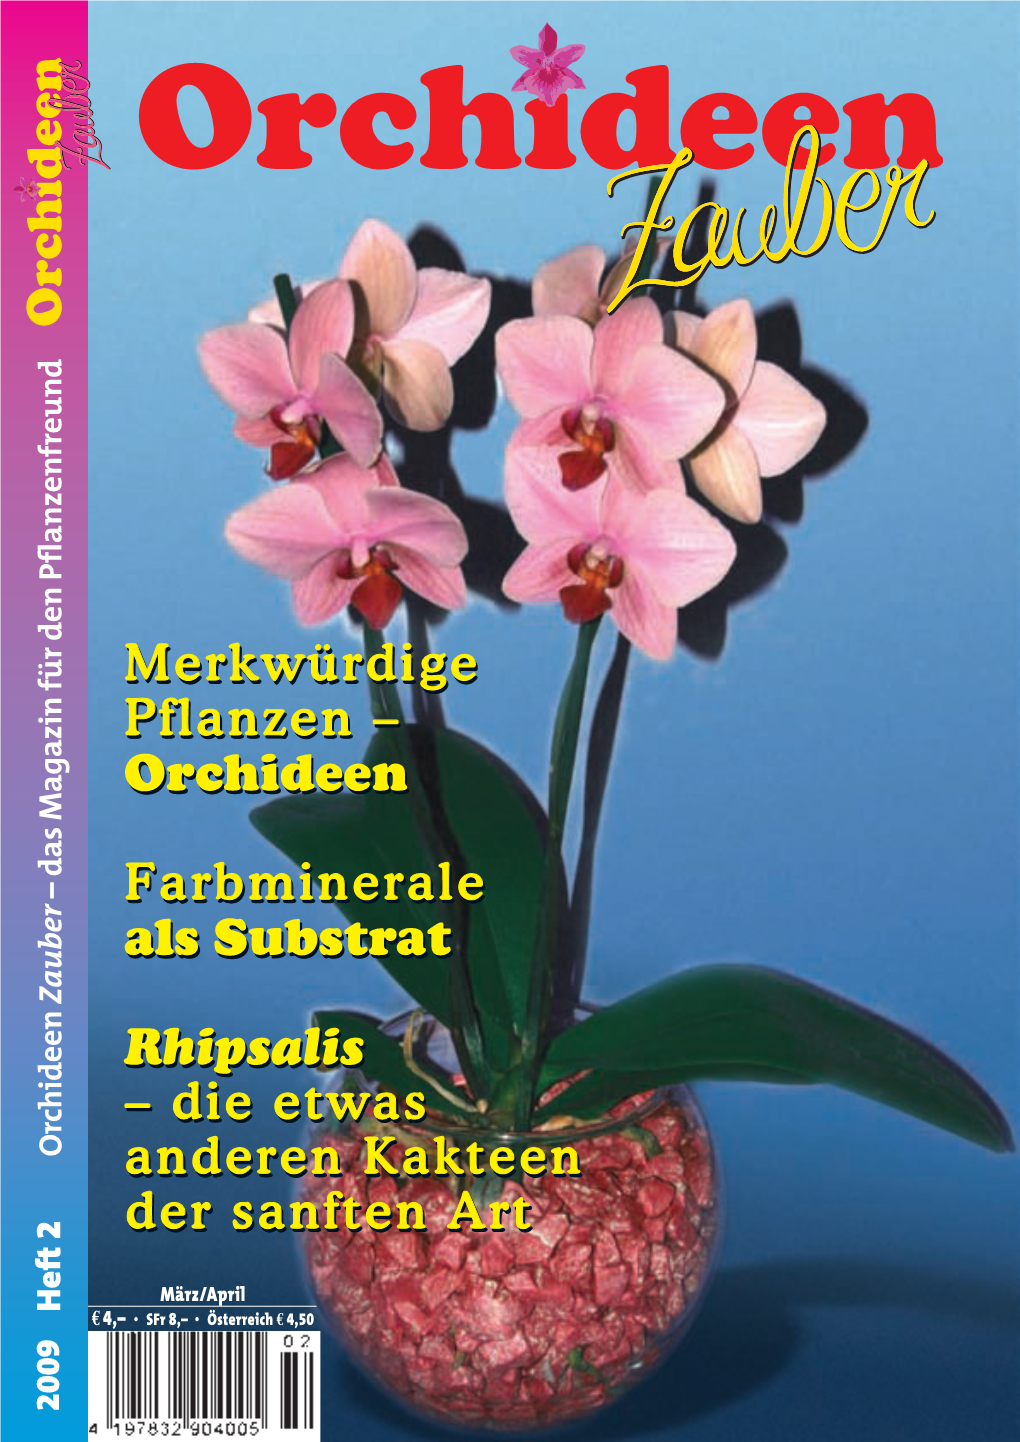 Orchideen Zauber – Das Magazin Für Den Pflanzenfreund E 4 ,– O Rhipsalis Als M M P P F F – – a a D D O